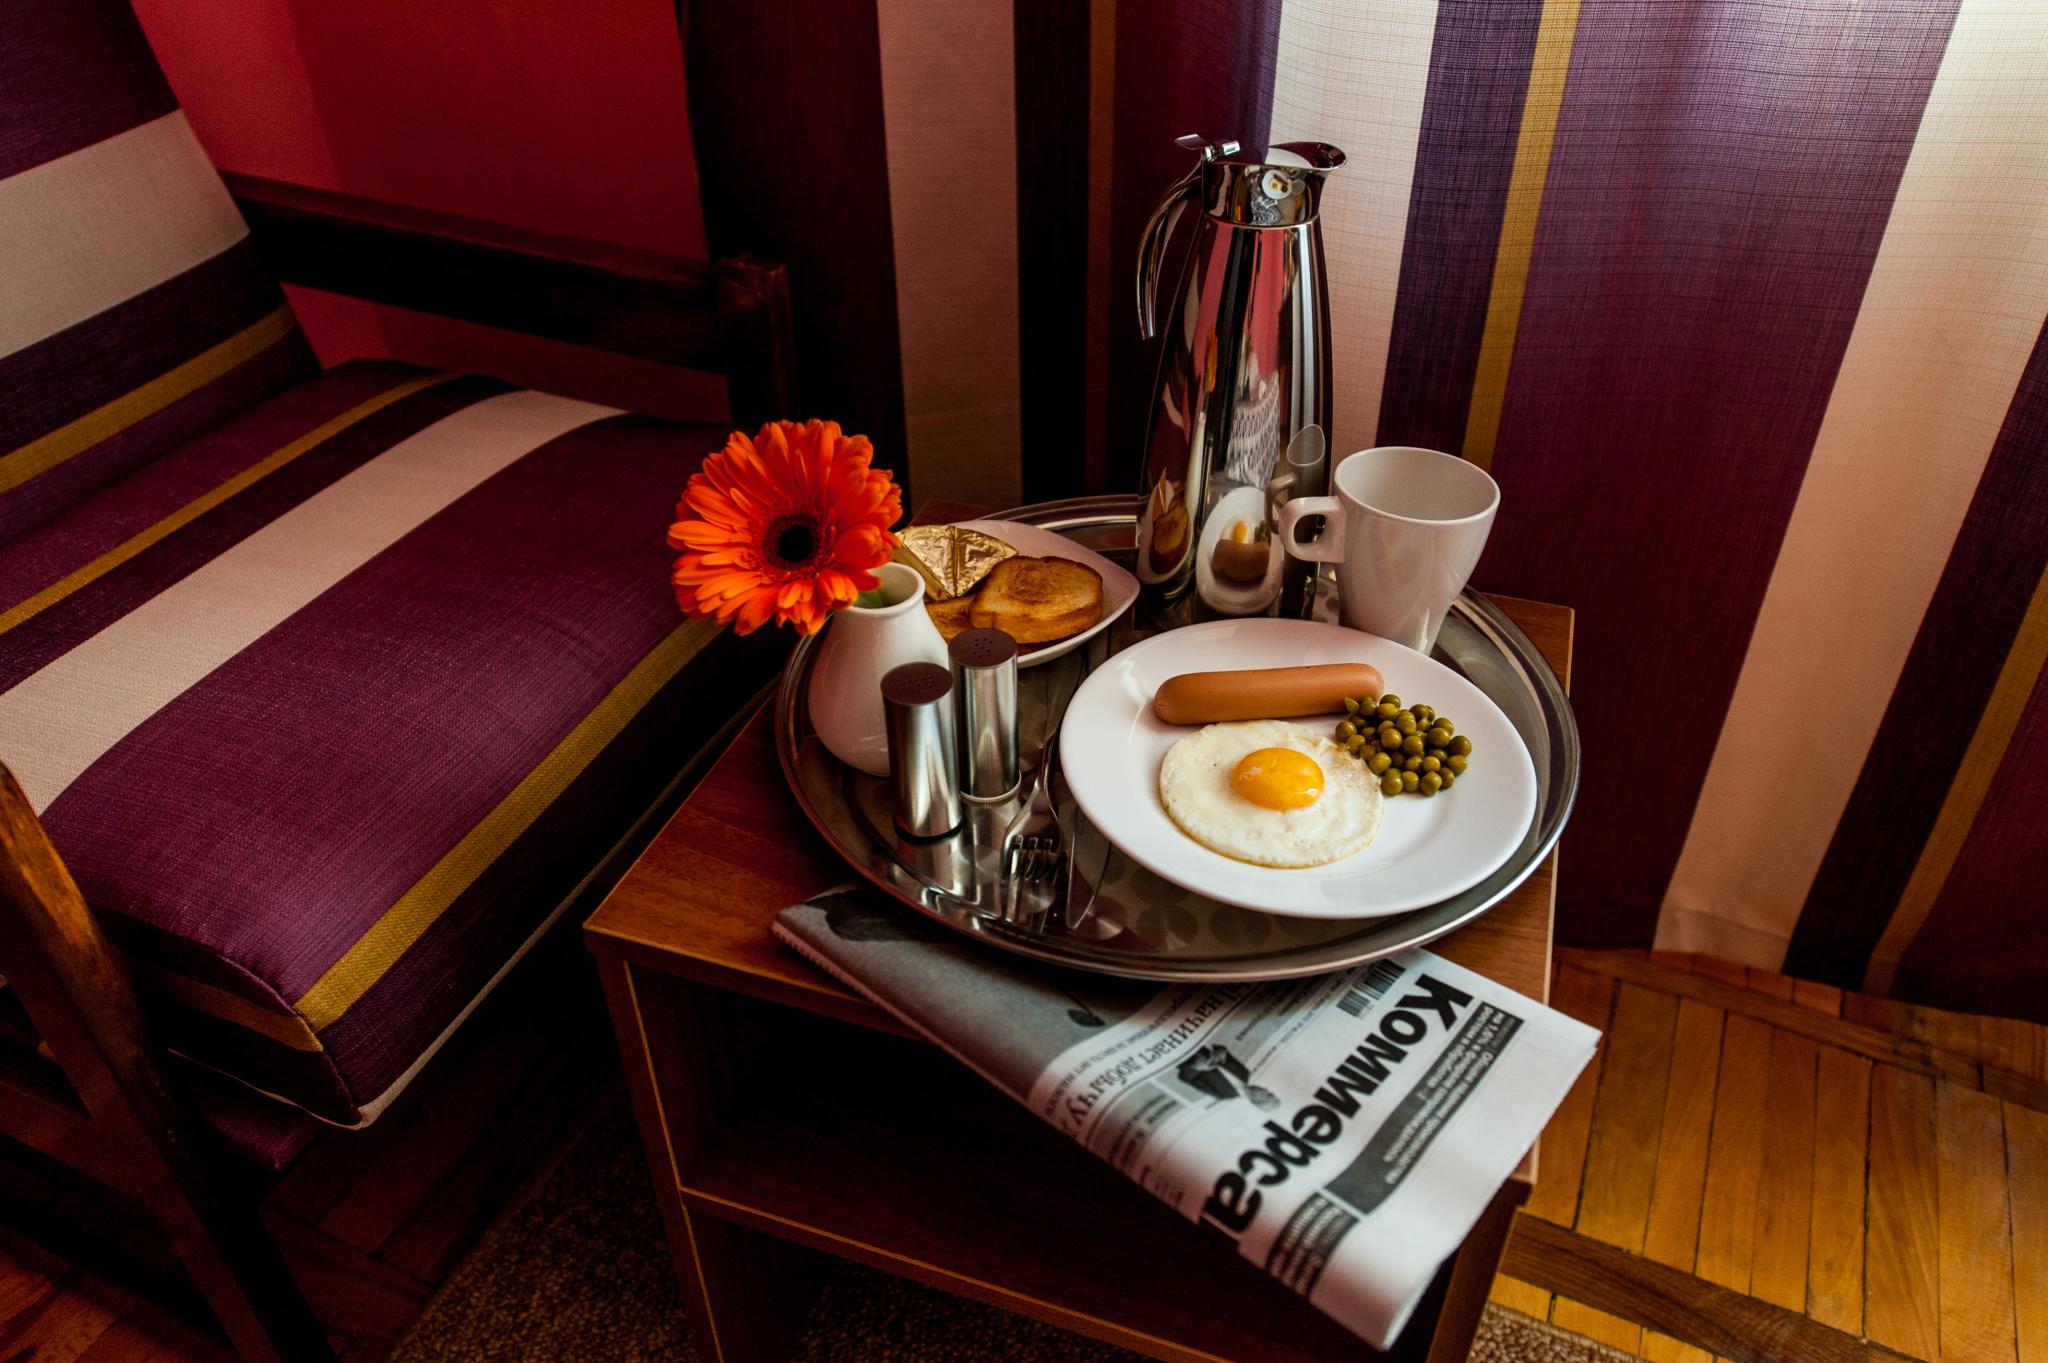 Отели ярославля с завтраком. Отель Bed and Breakfast. Отель бед энд Брекфаст Курск. ВВ (Bed & Breakfast). Кровать в гостинице с завтраком.